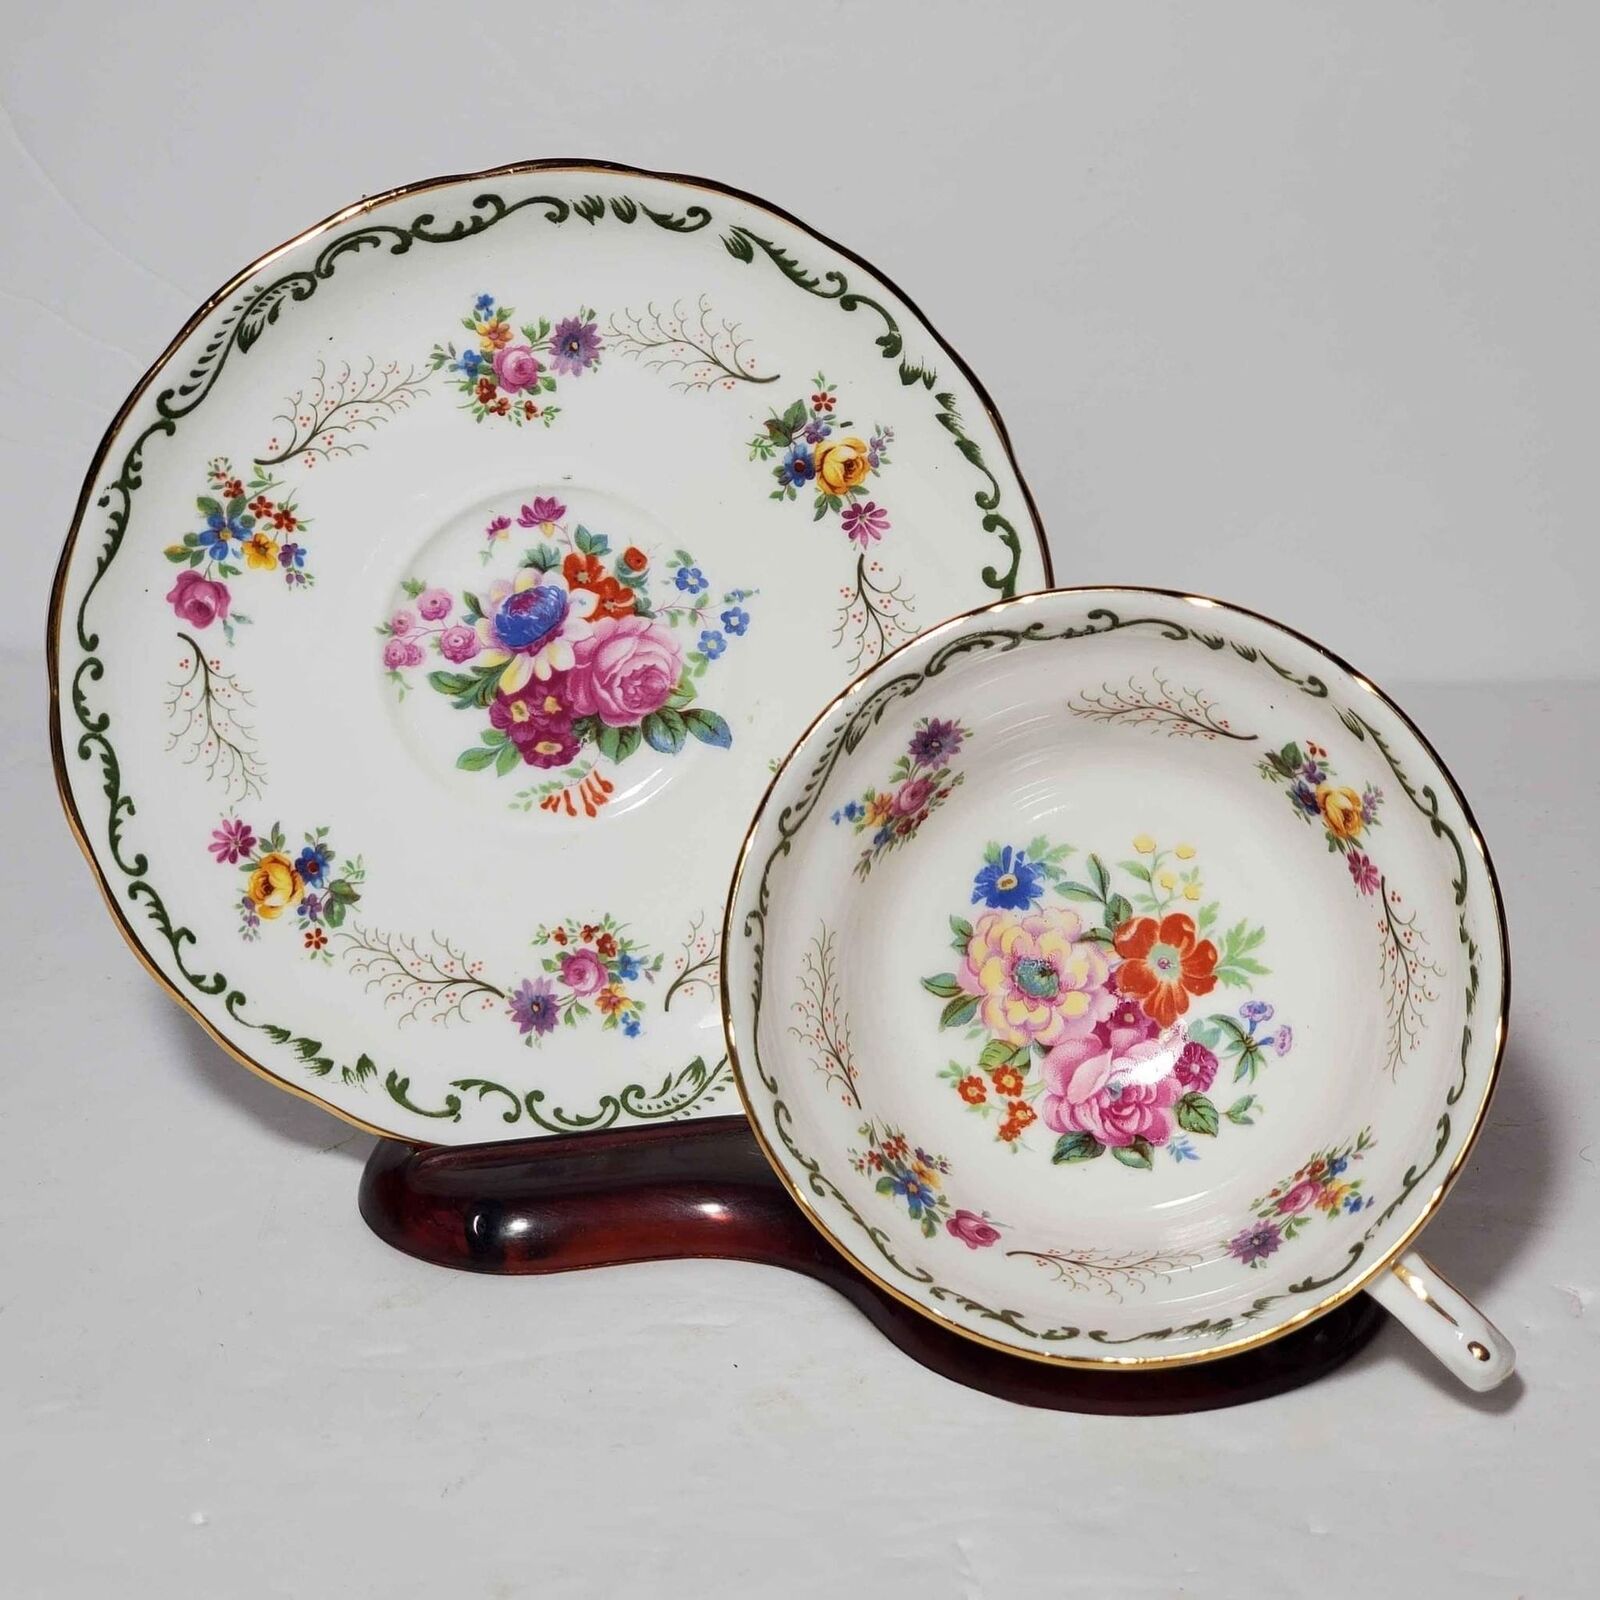 Copelands Grosvenor Teacup and Saucer Floral England Vintage